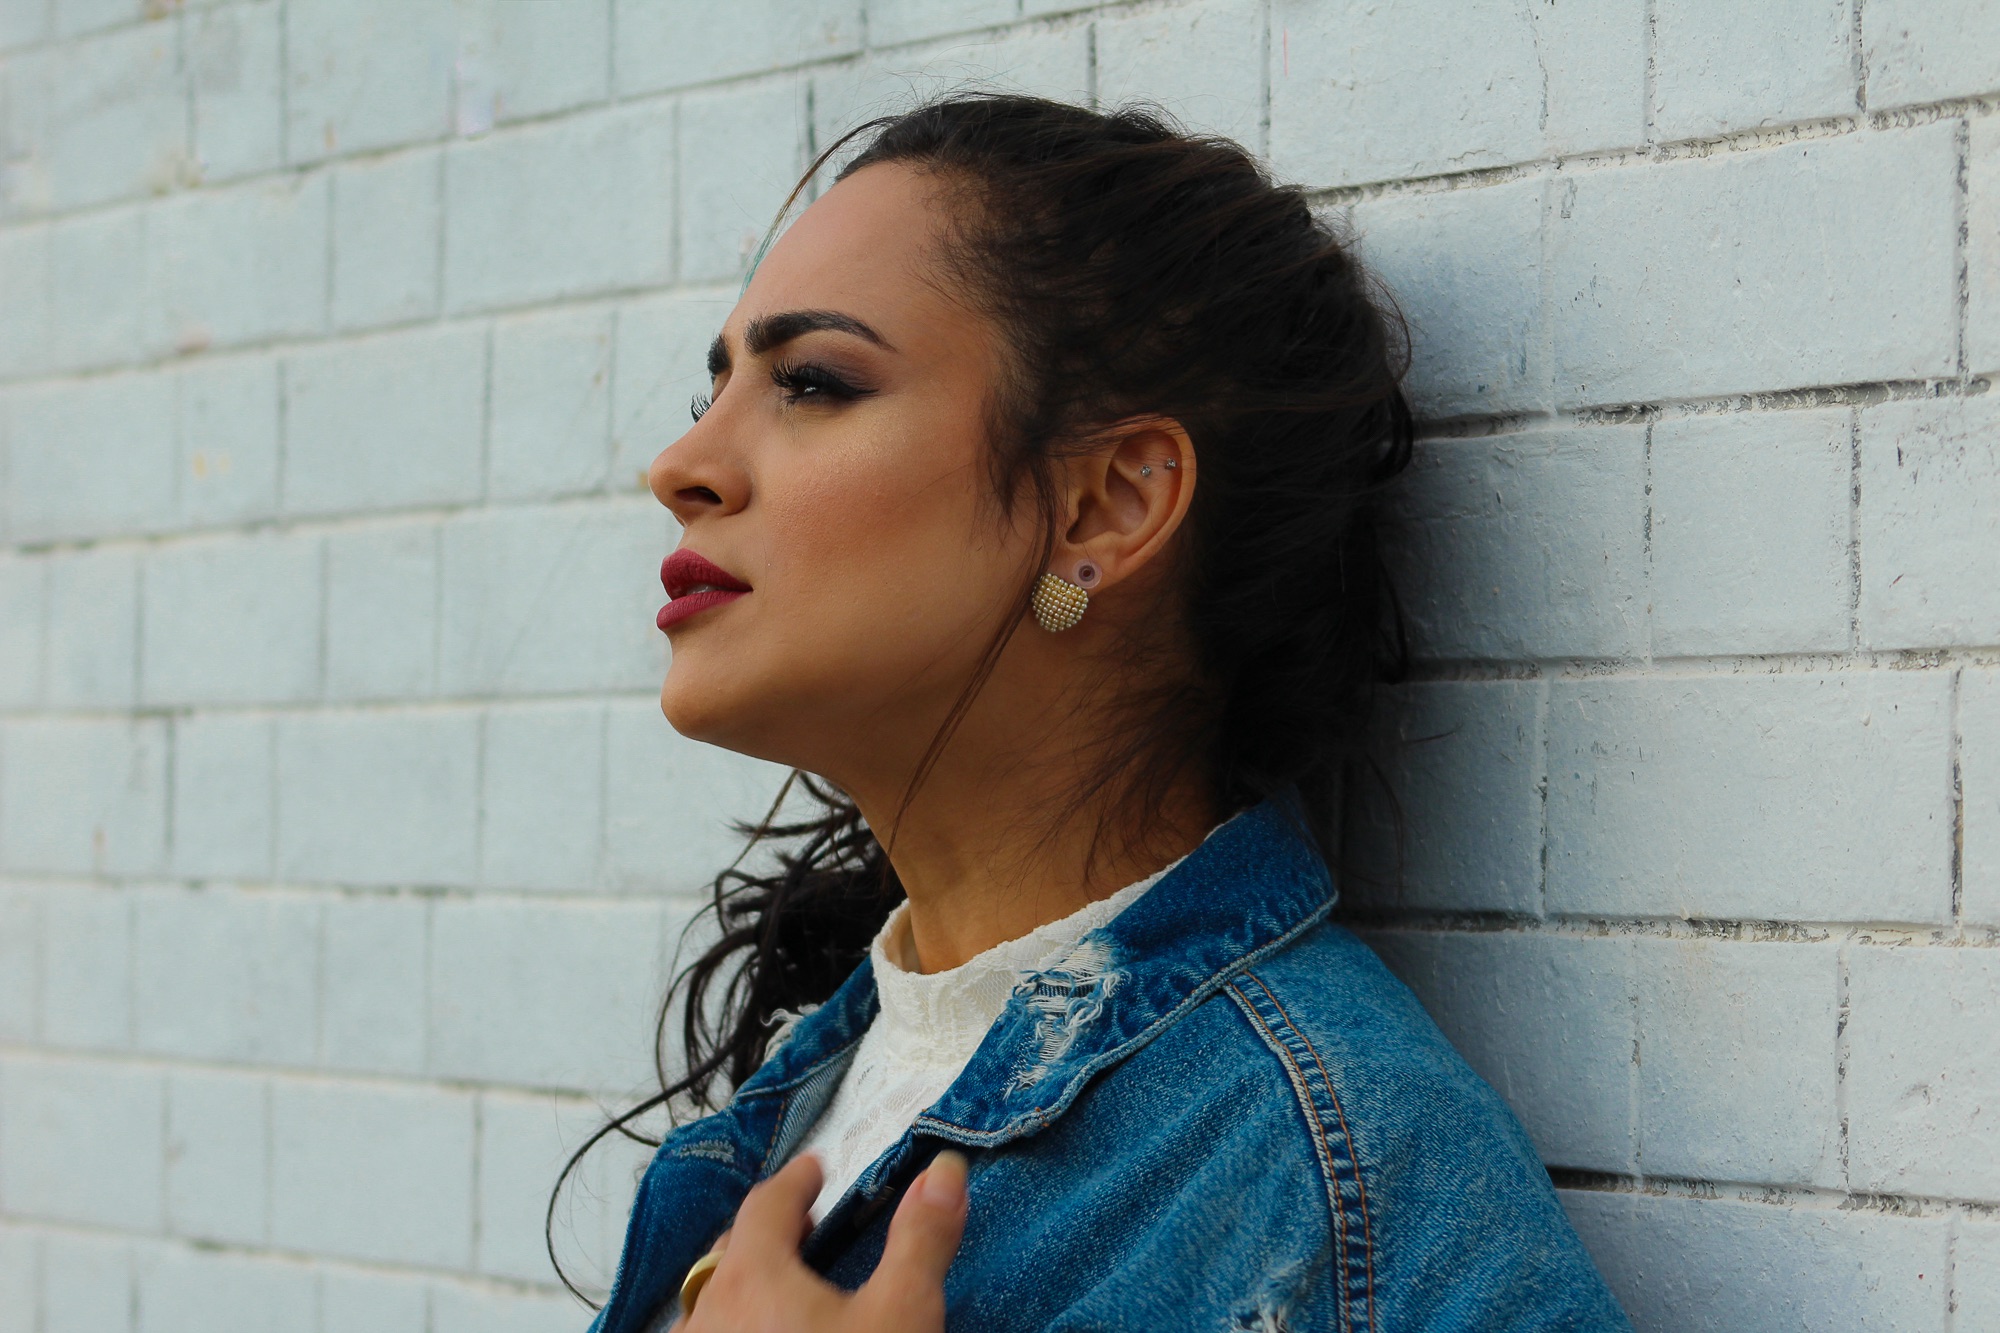 Debaixo de grande expectativa, Daniela Araújo lança o EP “Elementos”